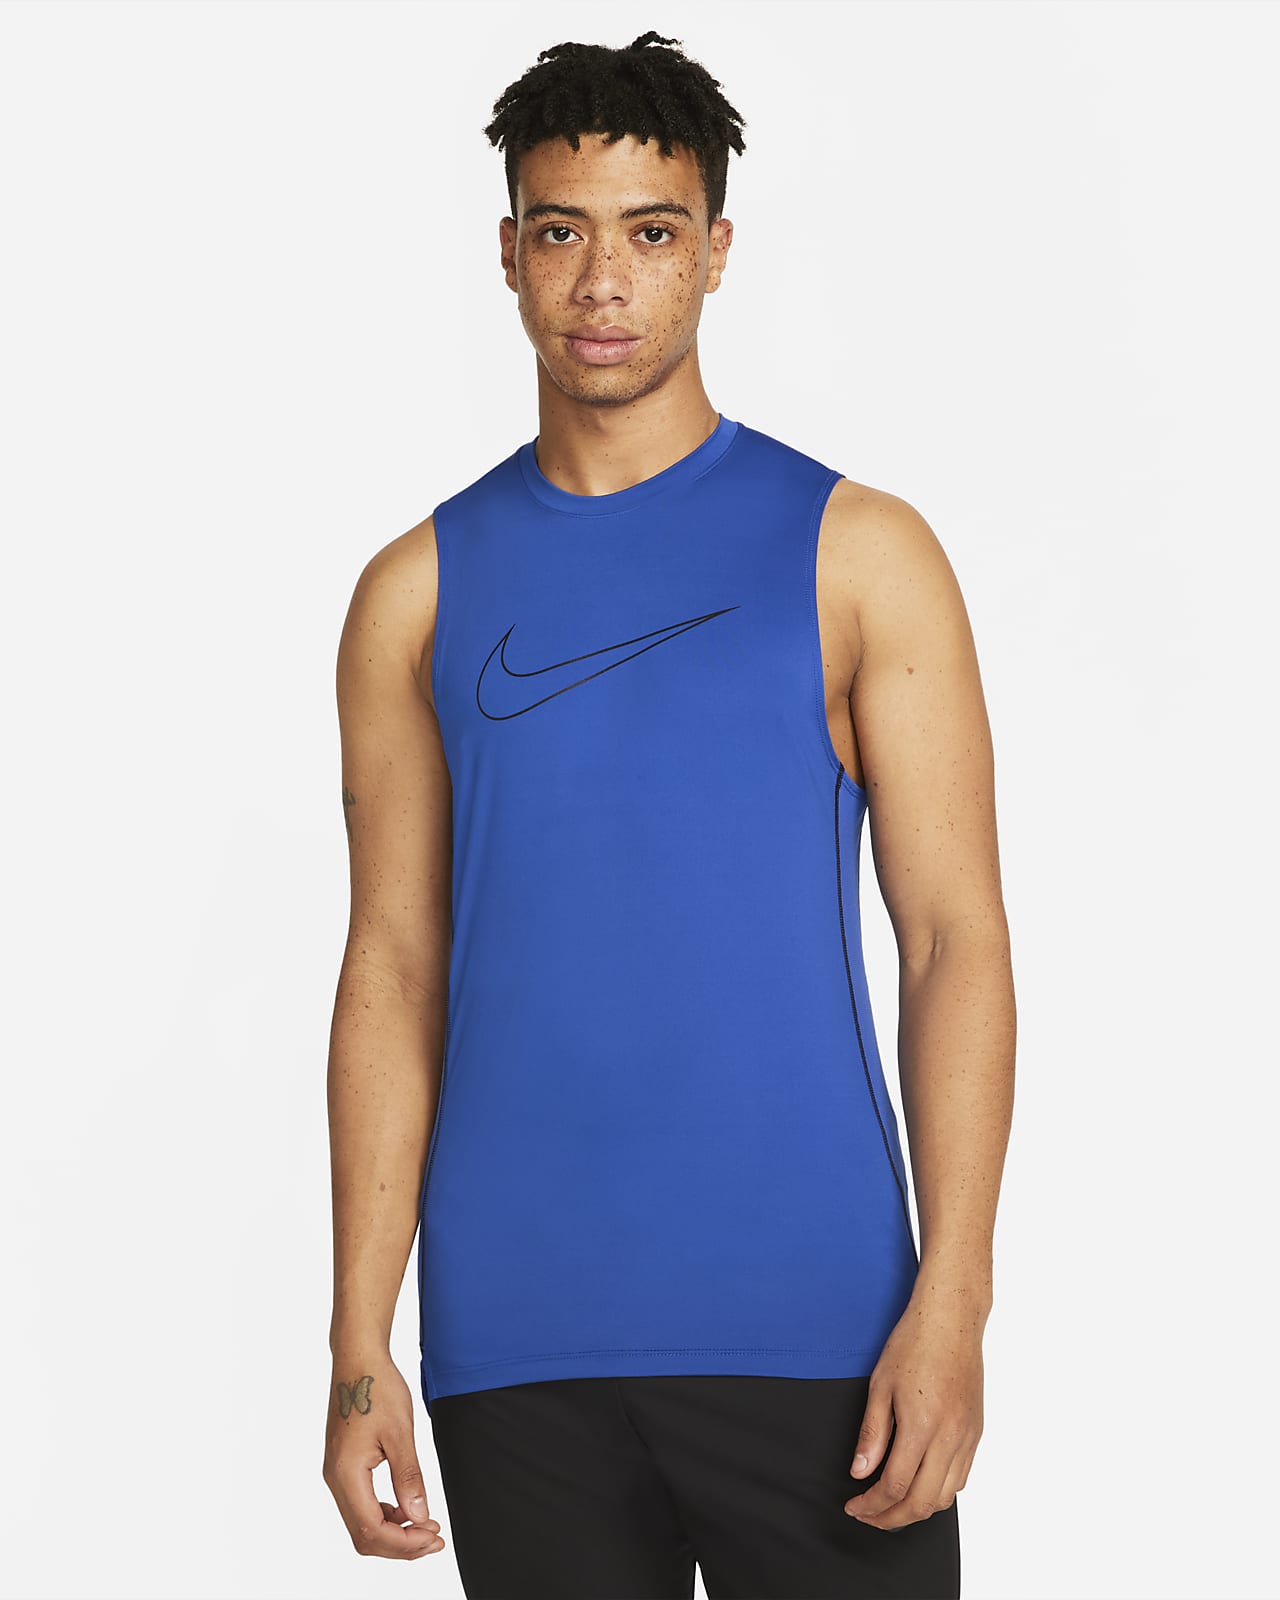 Nike Pro Dri-FIT Men's Slim Fit Sleeveless Top. Nike.com